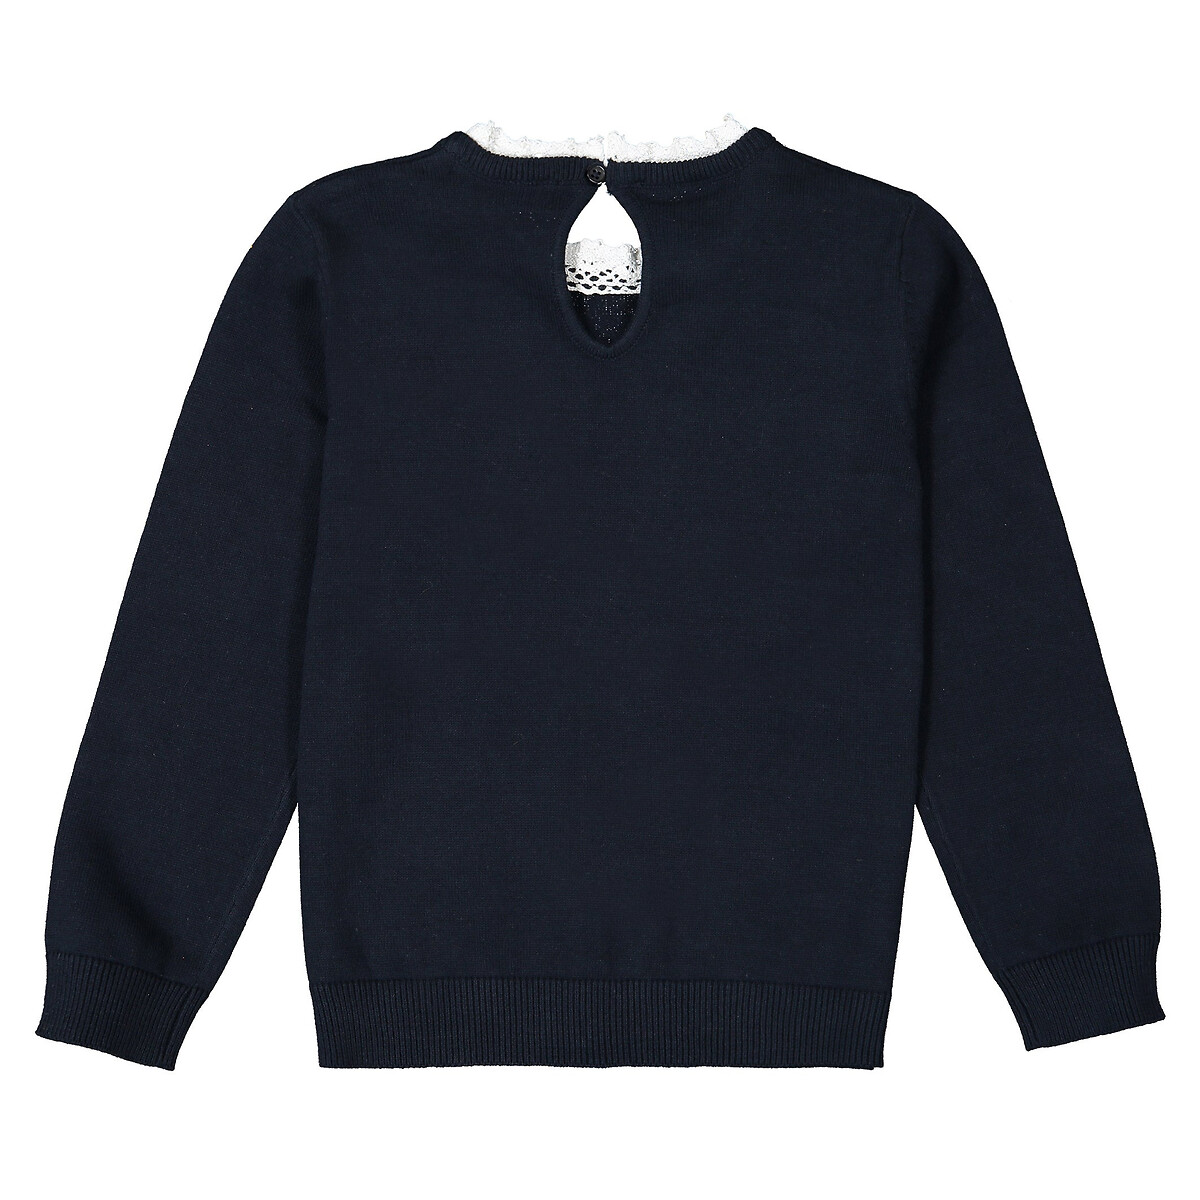 Пуловер La Redoute С эффектом  в  воротник связан крючком  3 года - 94 см синий, размер 3 года - 94 см - фото 3